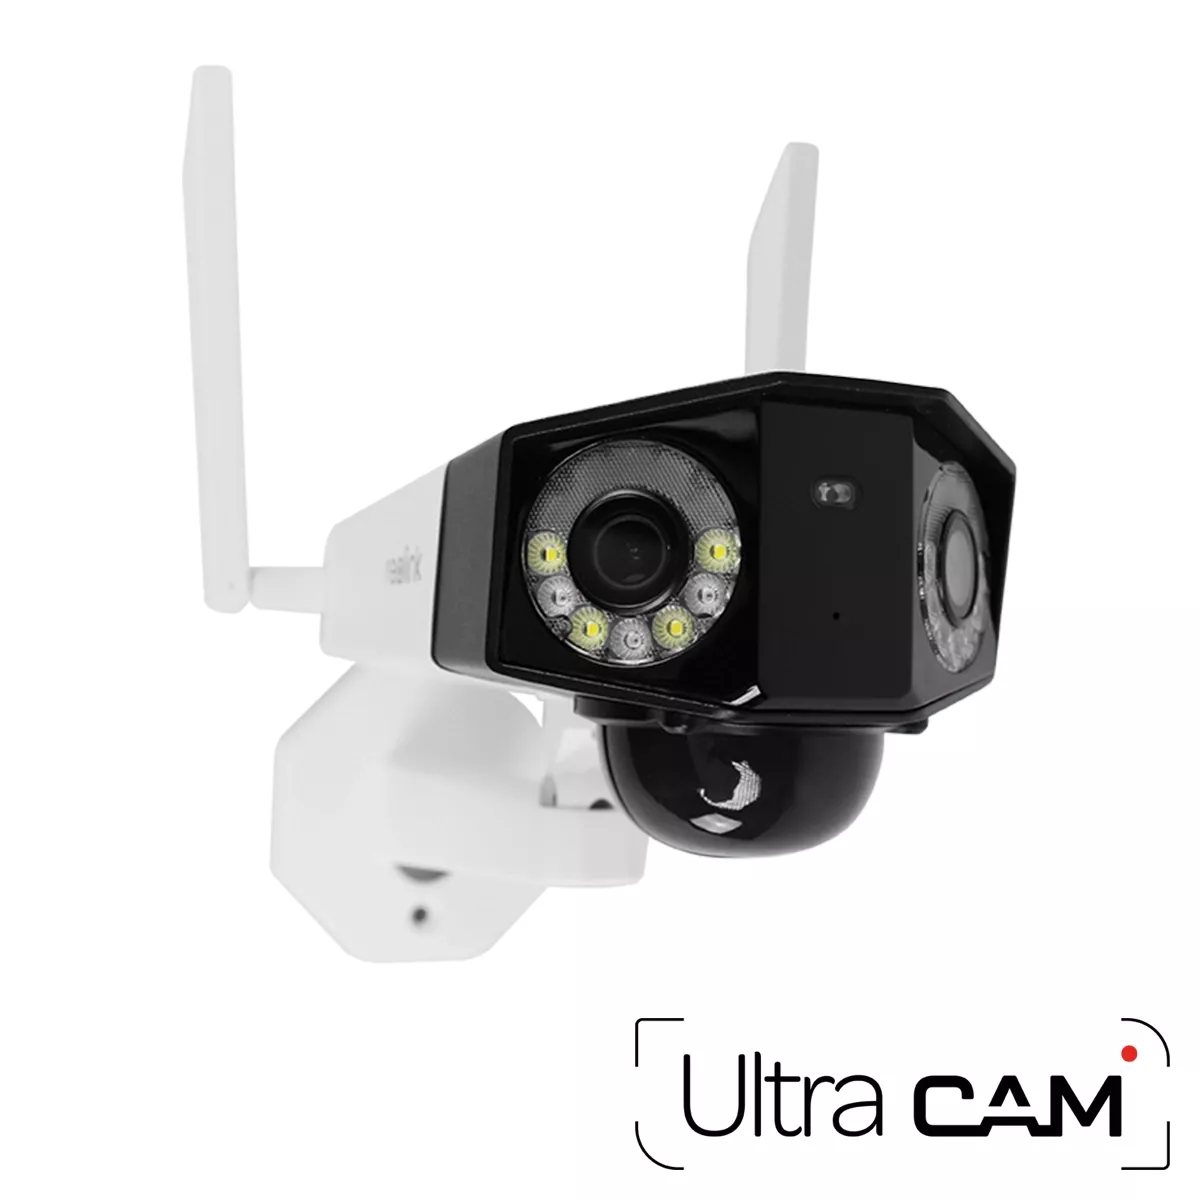 Camera 4G avec carte sim offerte - Vision en direct - jusqu'à 2 ans